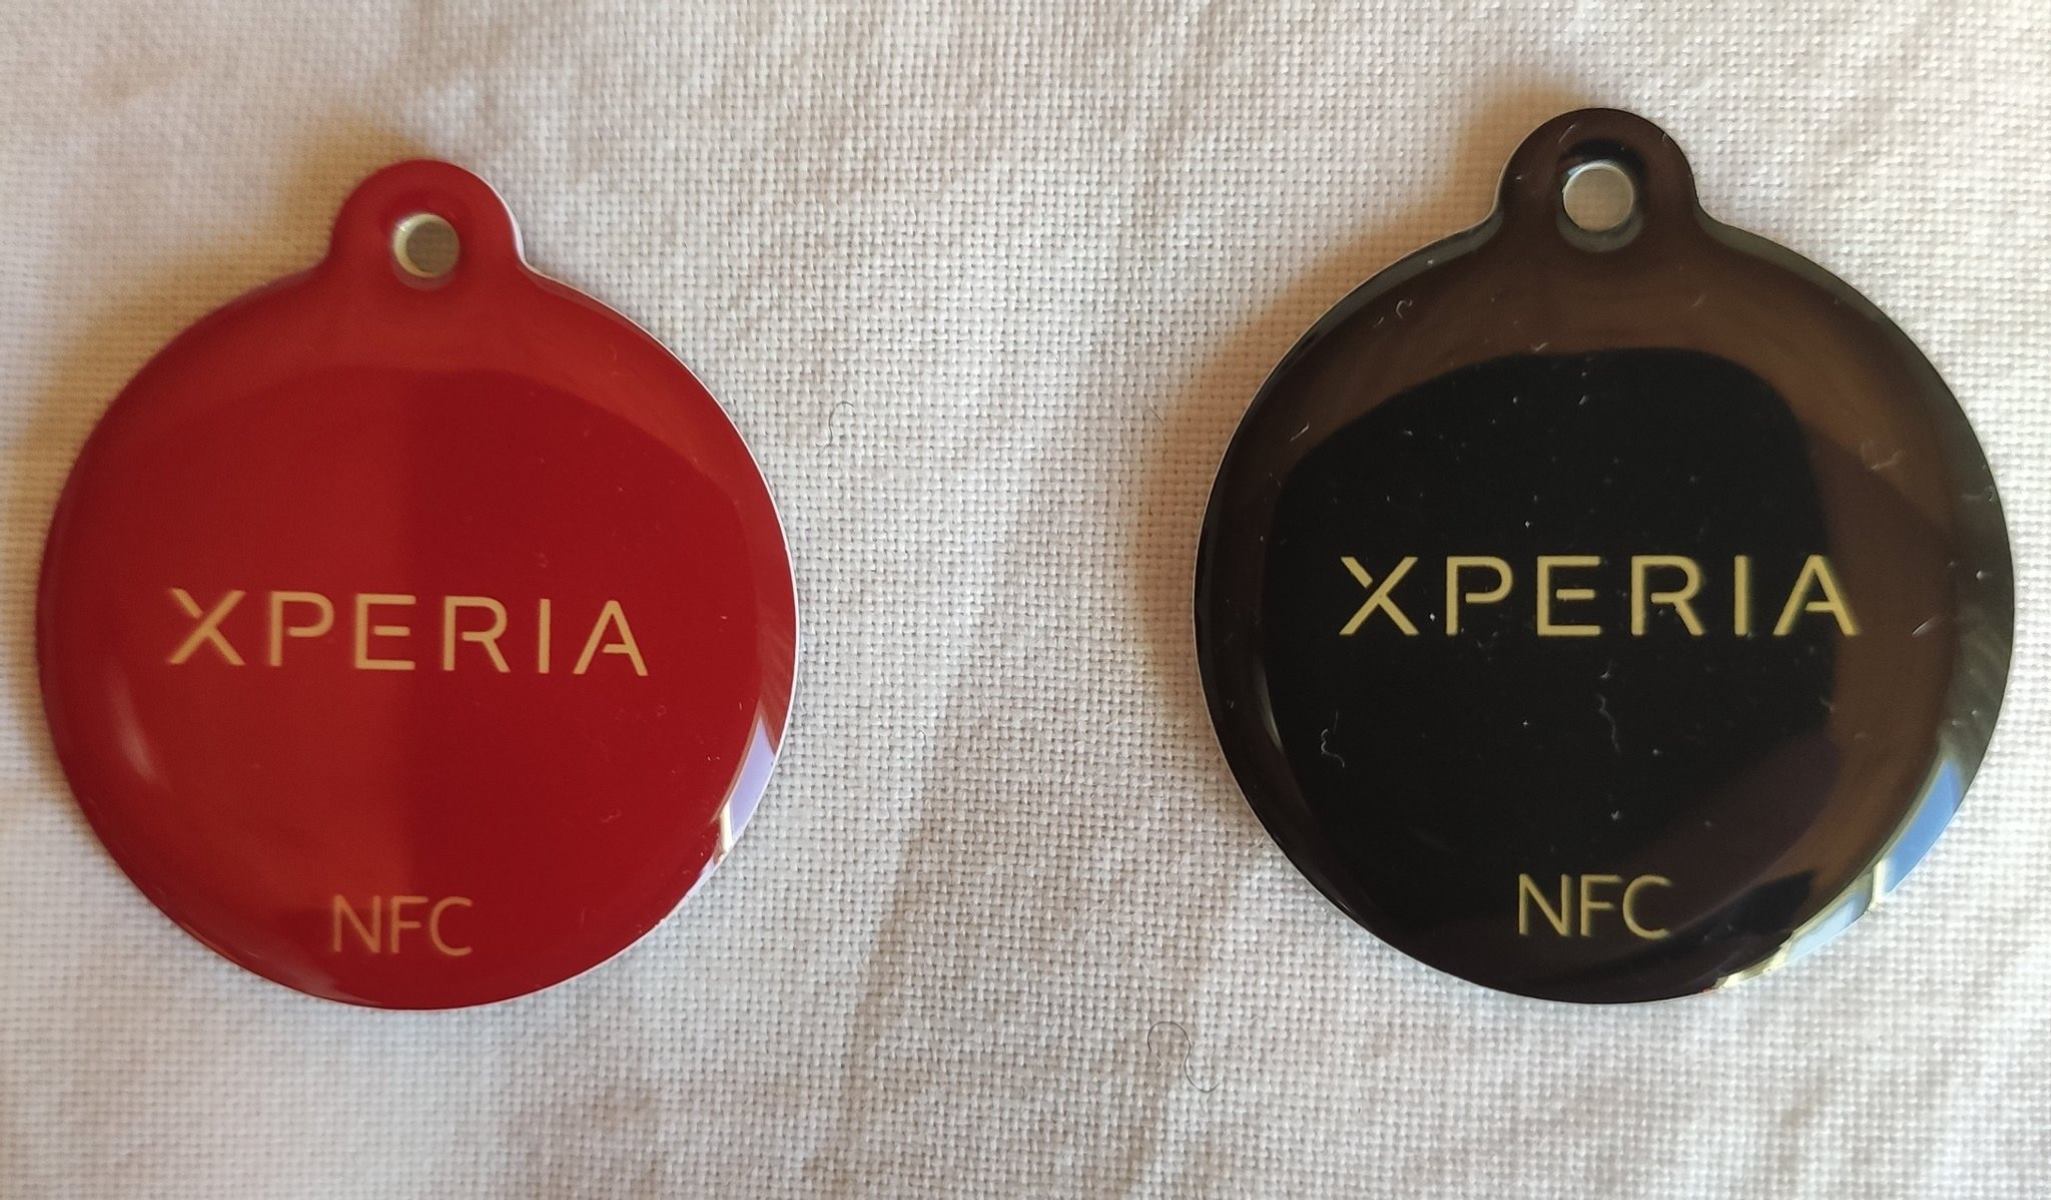 Xperia Smart Tags Setup: A Step-by-Step Guide